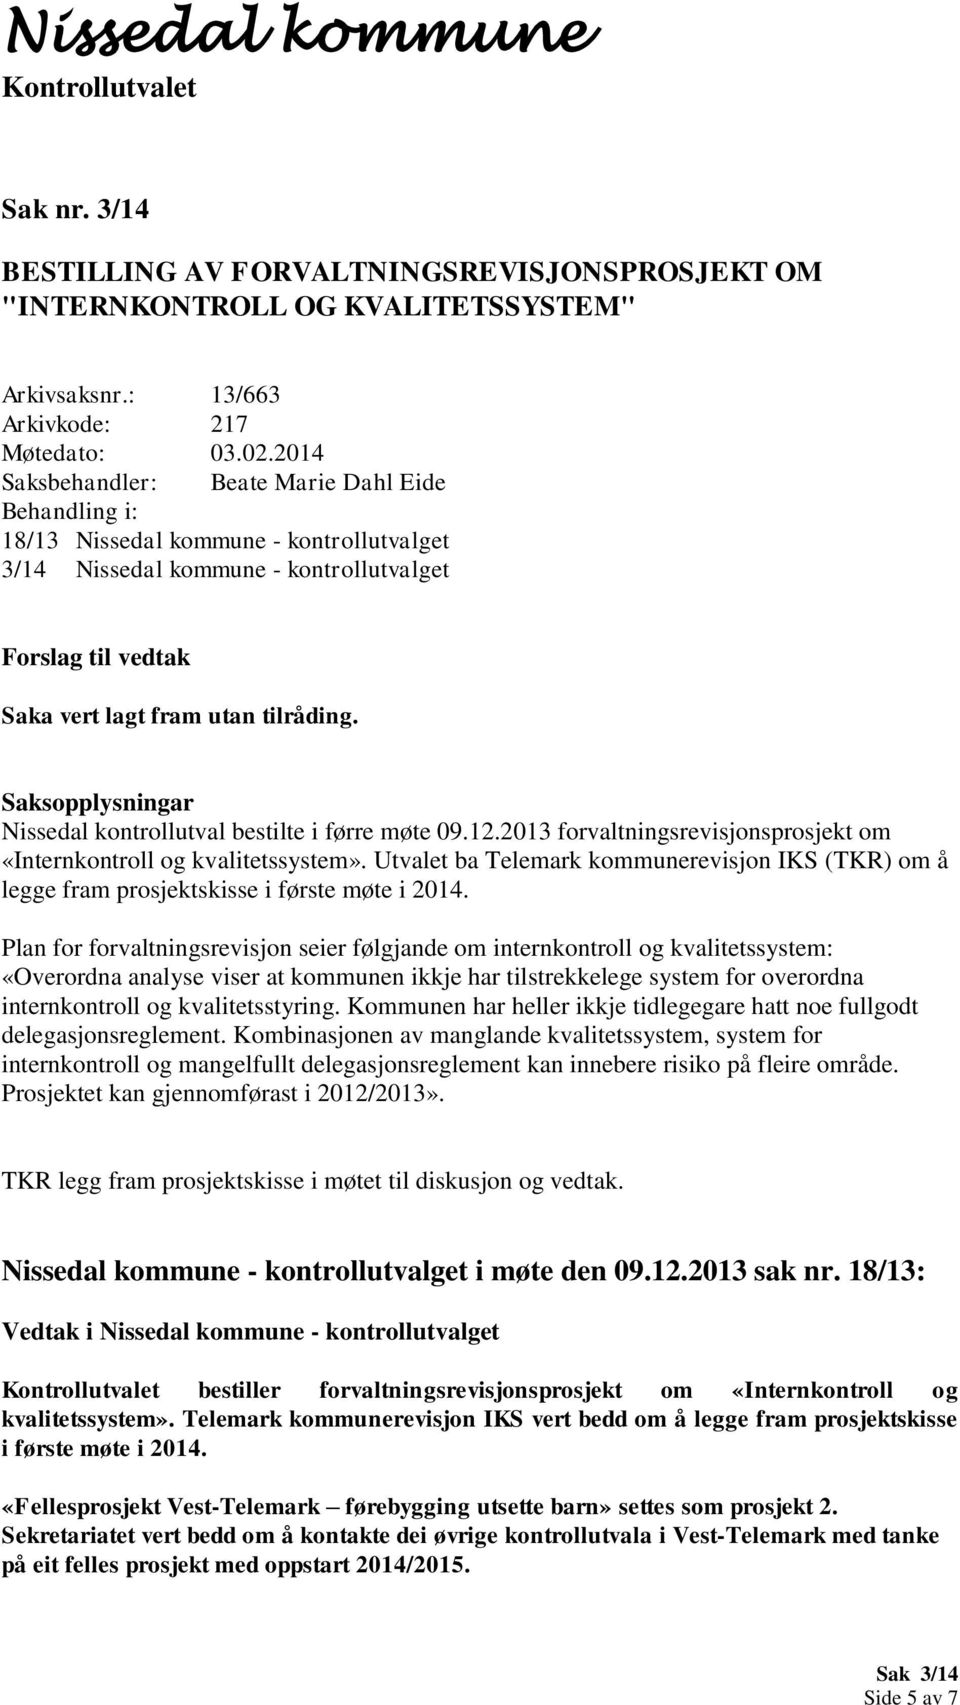 2013 forvaltningsrevisjonsprosjekt om «Internkontroll og kvalitetssystem». Utvalet ba Telemark kommunerevisjon IKS (TKR) om å legge fram prosjektskisse i første møte i 2014.